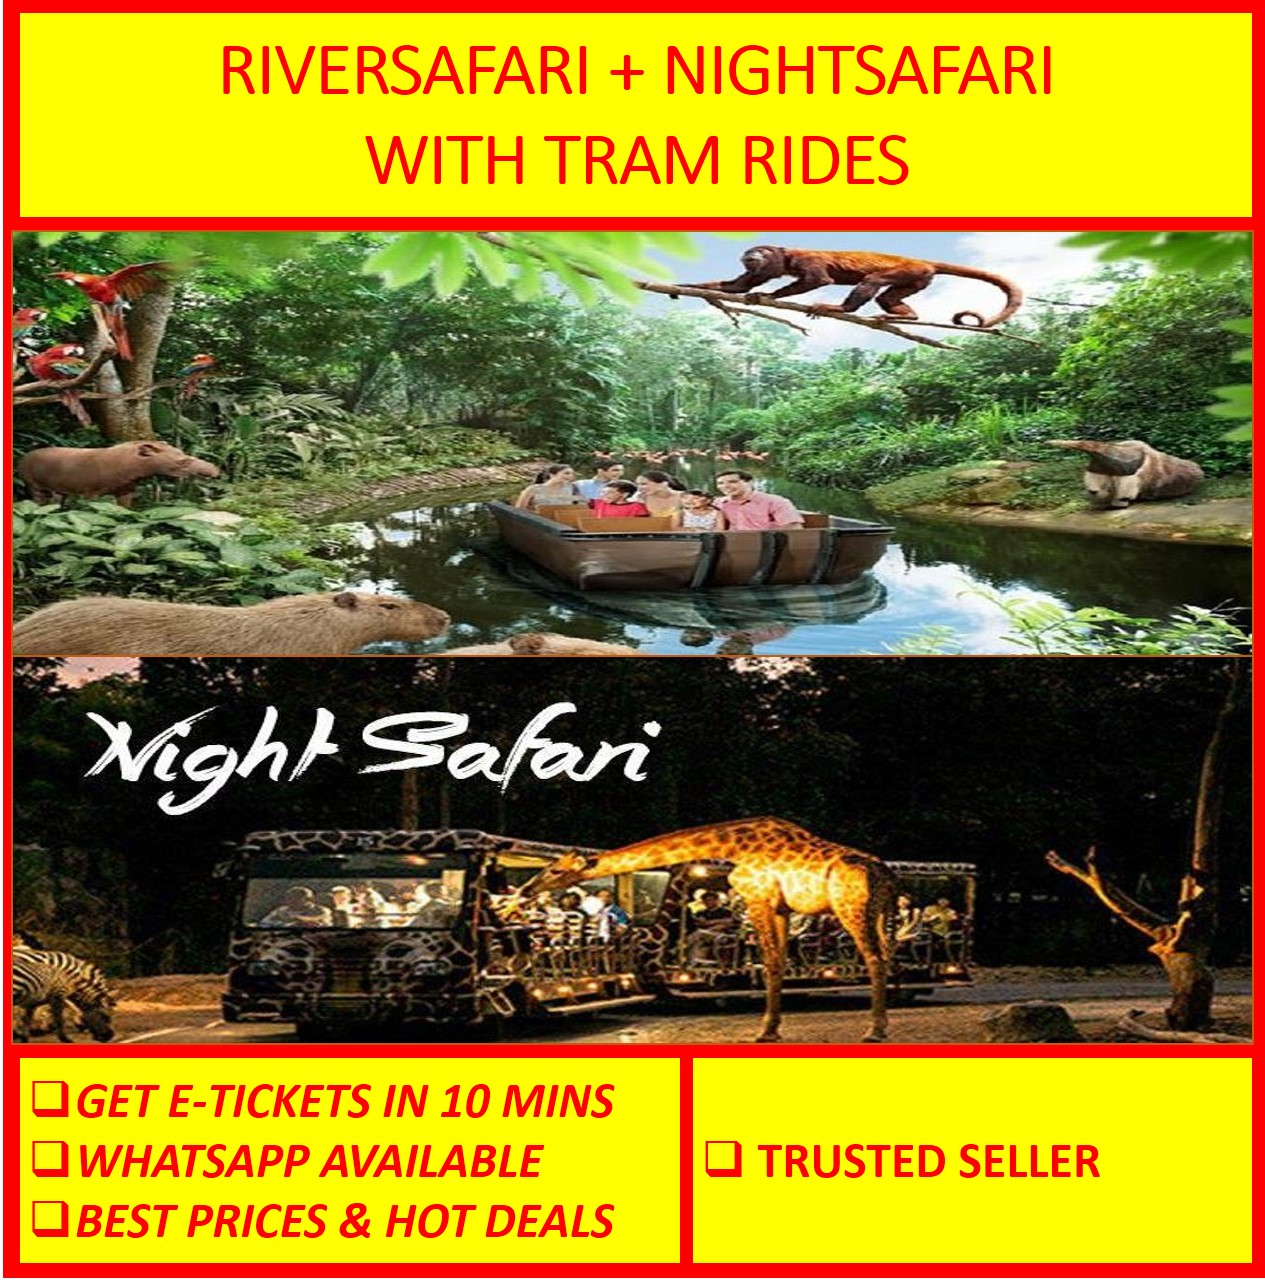 night safari and river safari tickets